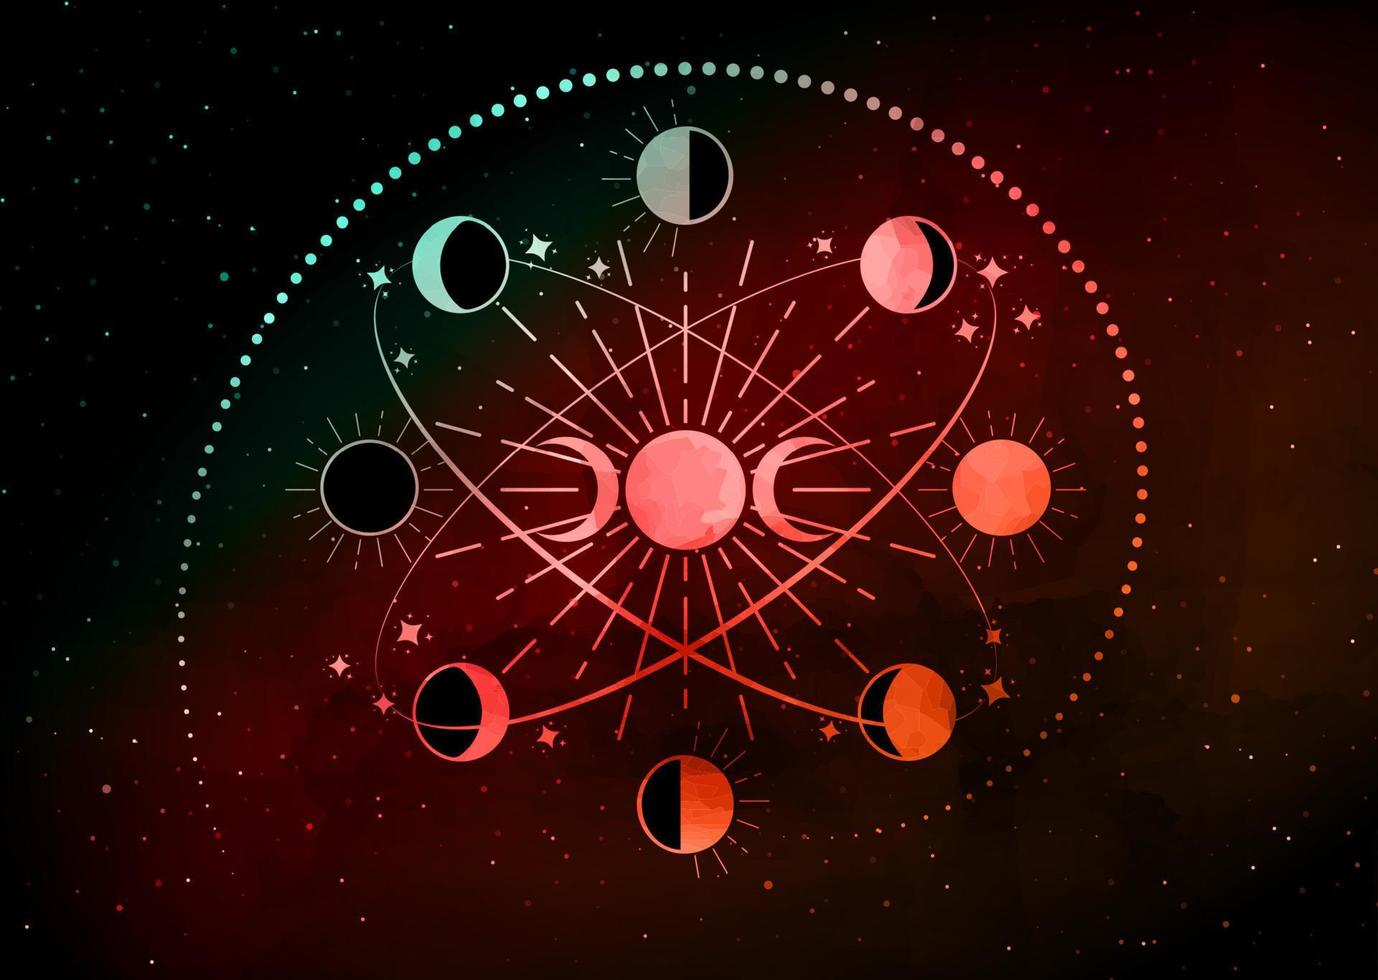 fases da lua em círculos orbitais, deusa tripla, lua crescente, mandala espiritual, geometria sagrada. símbolo da roda wicca, tatuagem colorida do logotipo redondo do vetor isolada no fundo preto